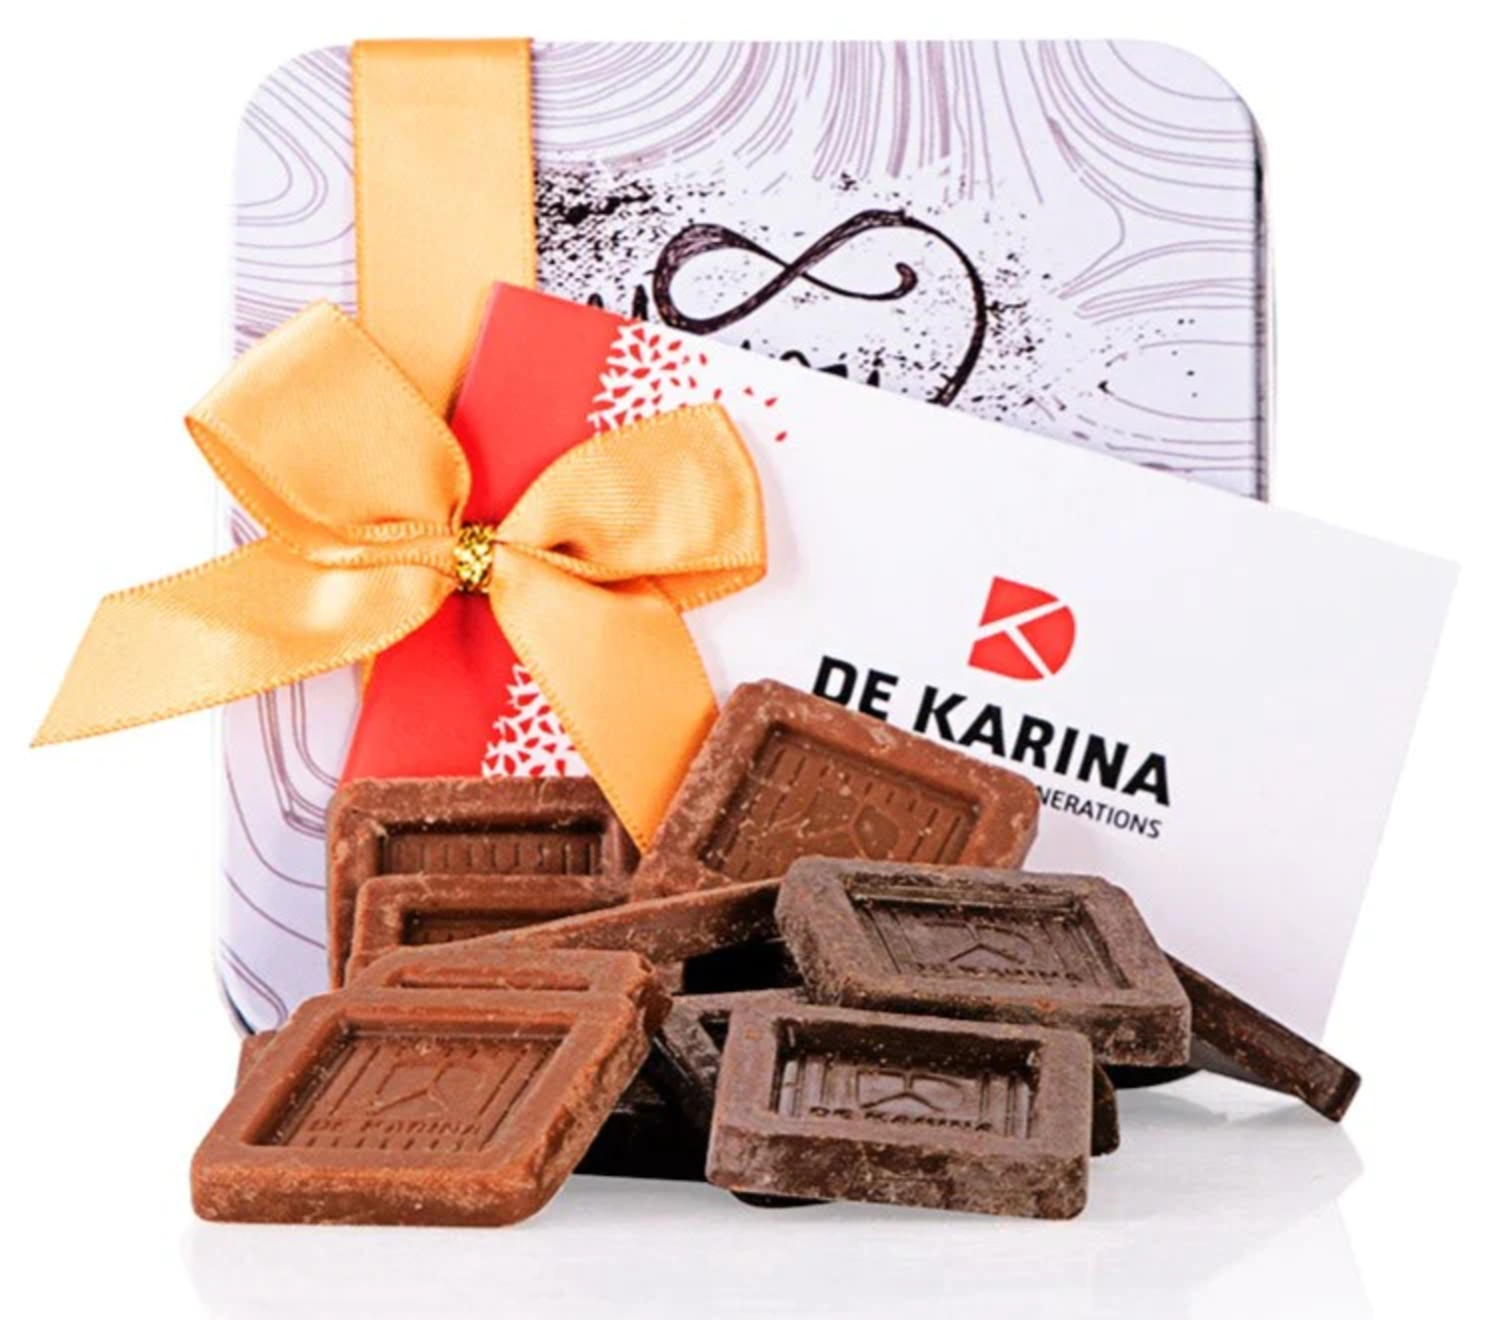 De Karina - mix 2 types of chocolate squares - white solo